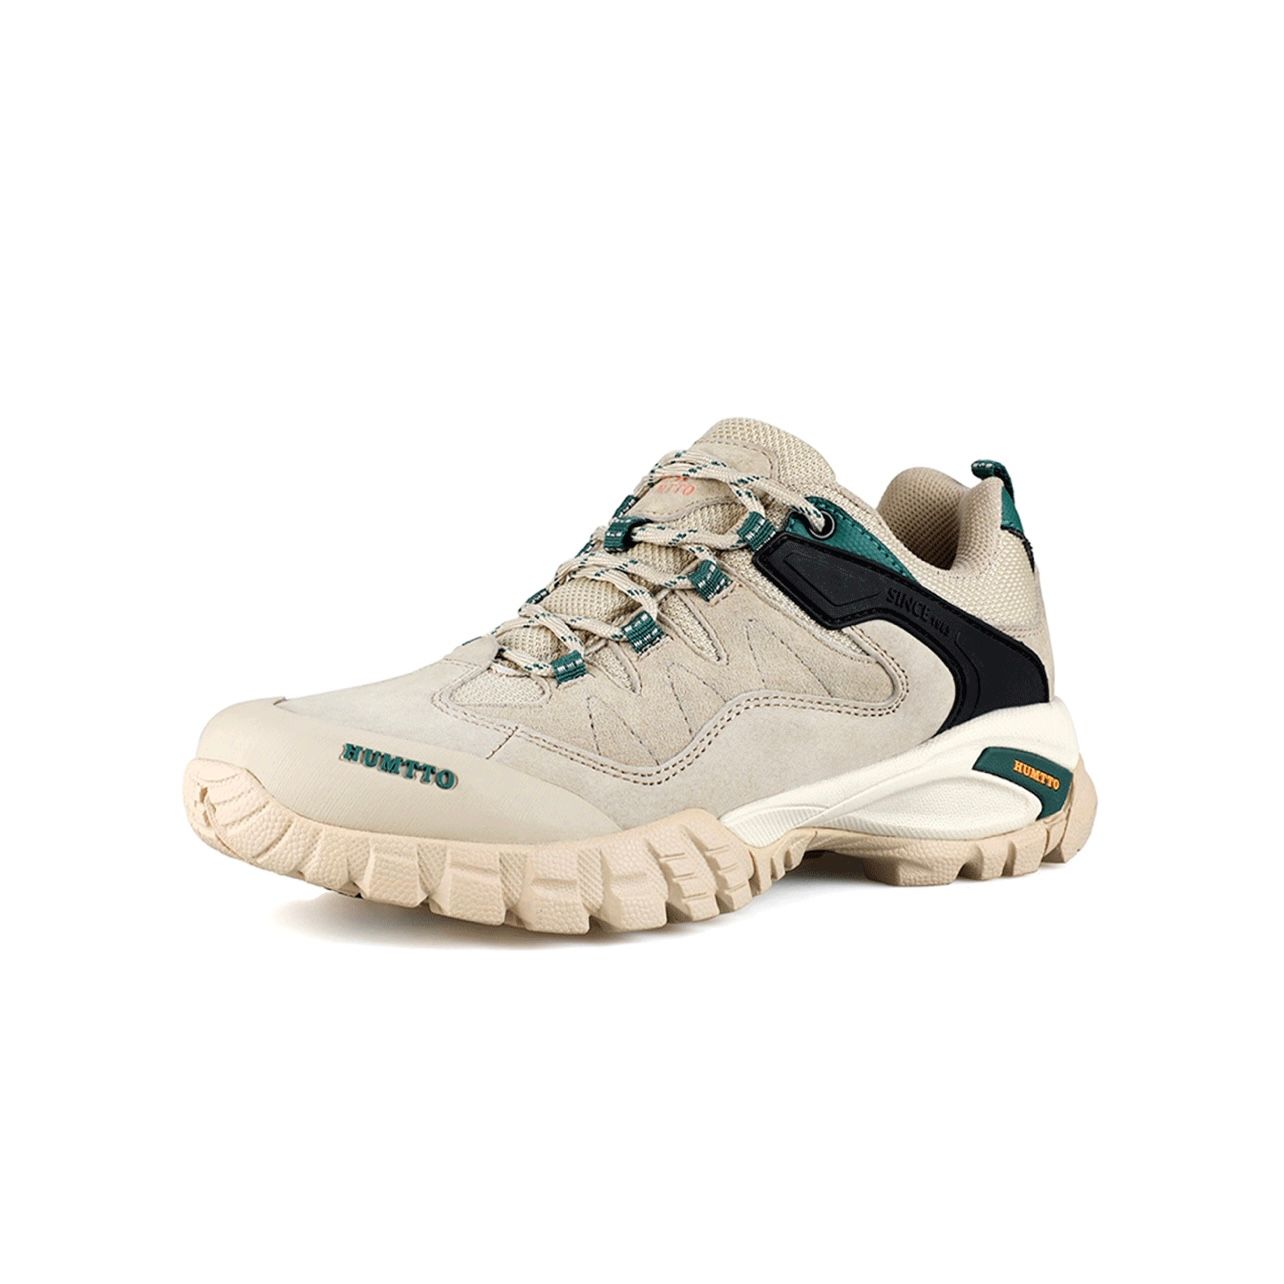 Giày Hiking siêu nhẹ nữ Humtto 110607B-3 (Màu be)